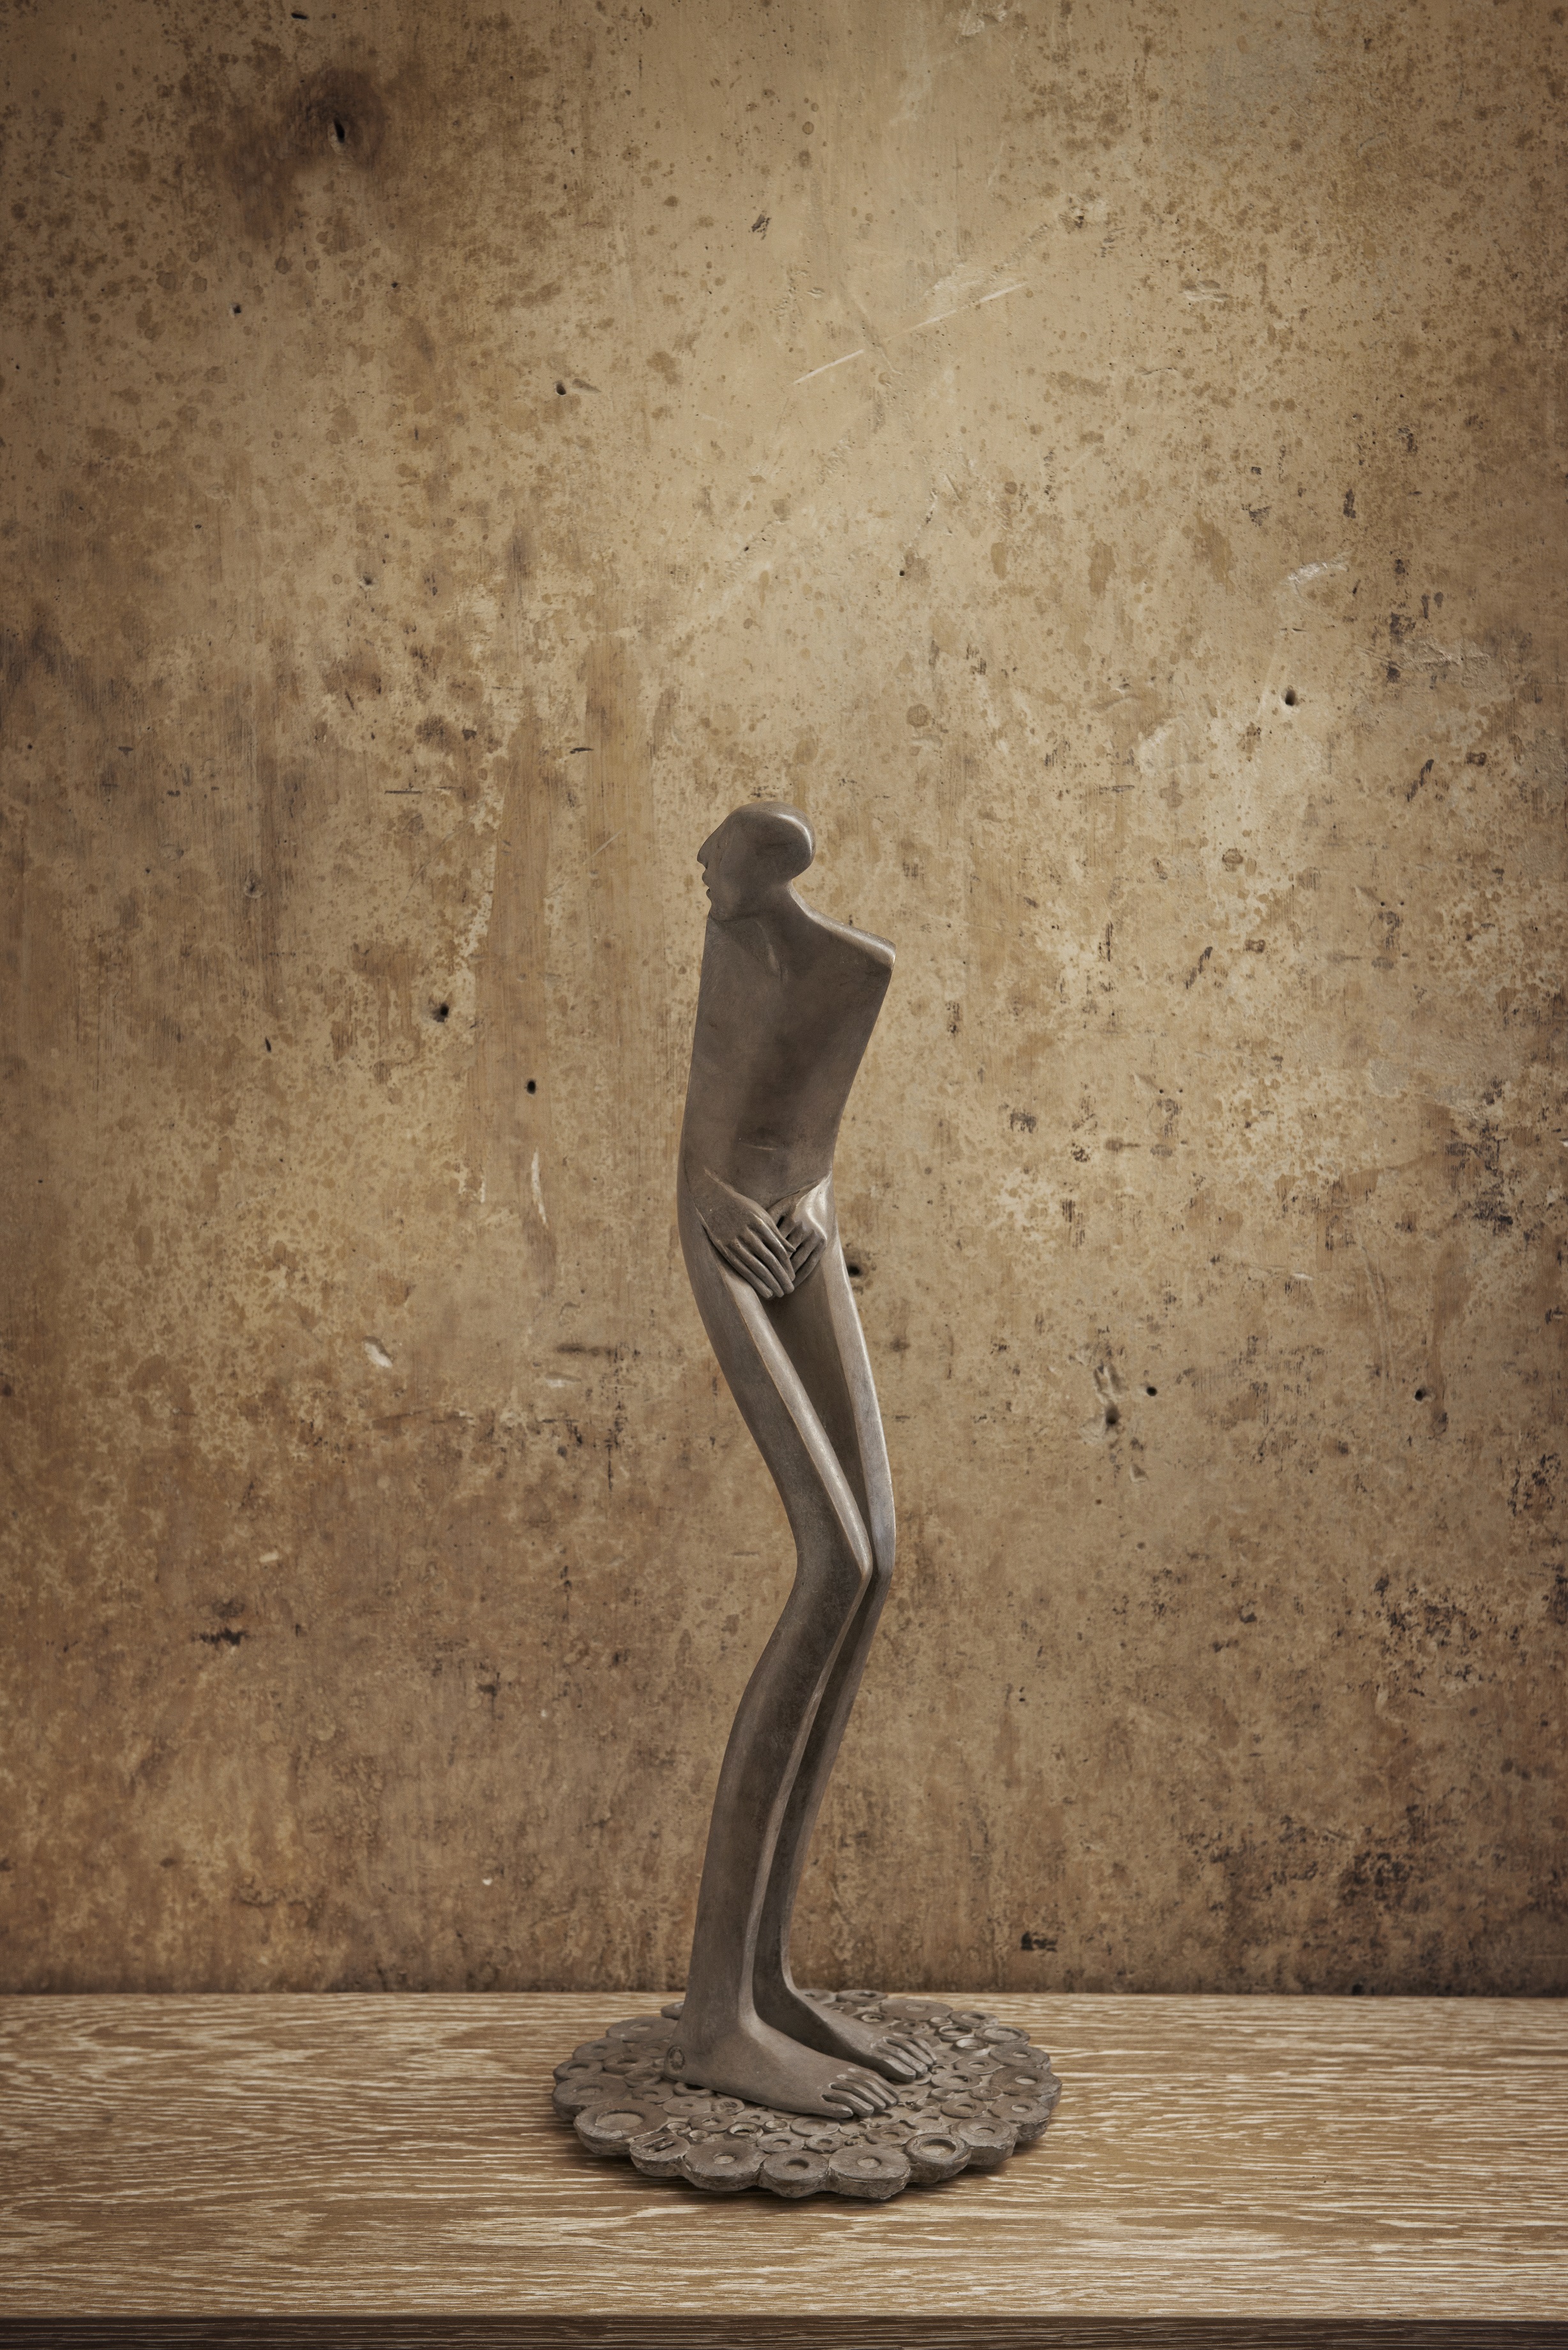 Magnifique Sculpture en Bronze Original de l'artiste Espagnol Isabel Miramontes Pudeur Patinée Grise Maternité Homme Pudique qui se cache A découvrir toute l'année à la Galerie Maner de Pont-Aven en Bretagne